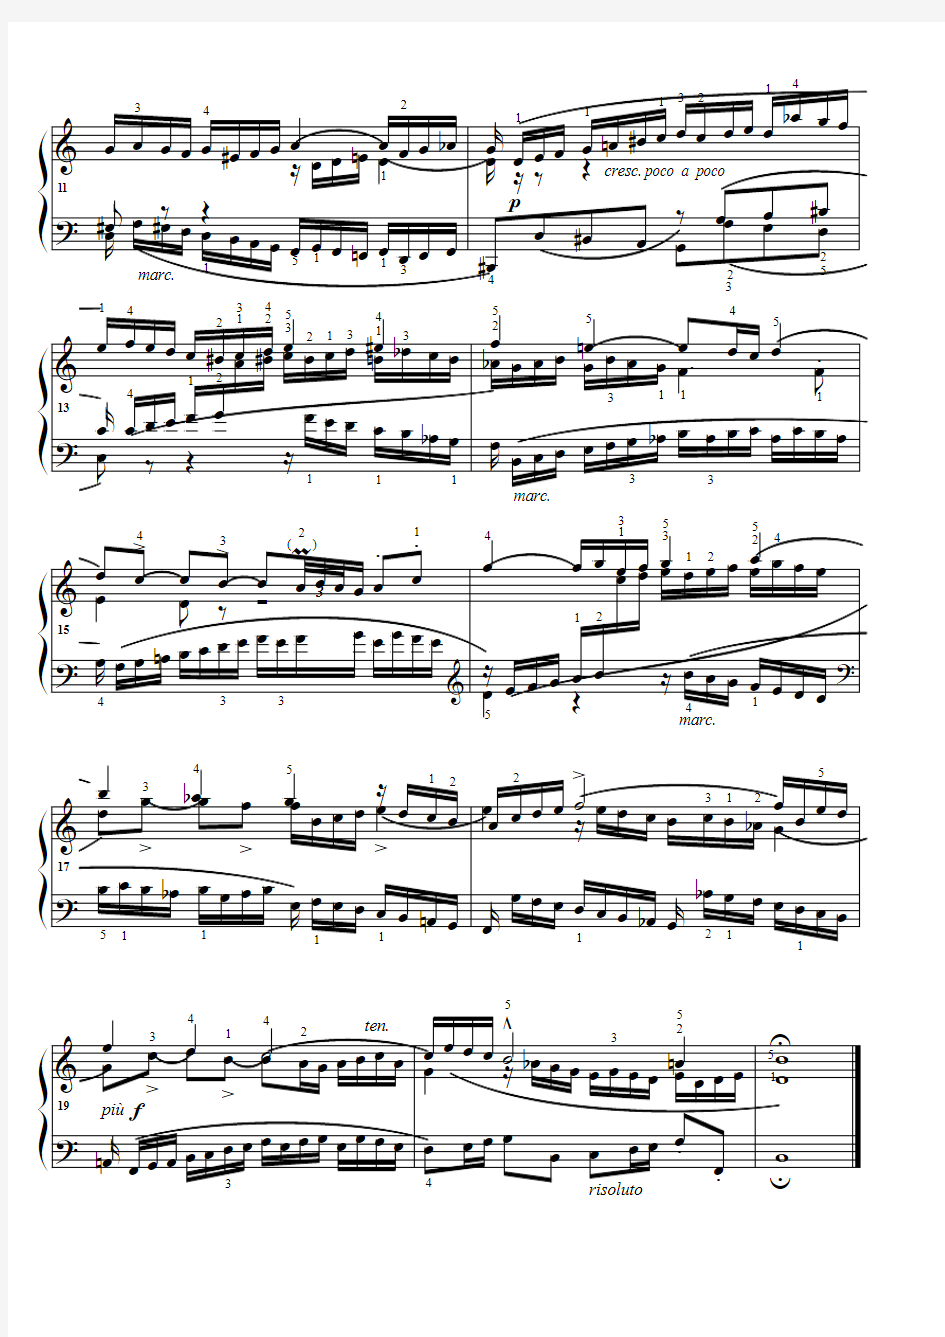 三部创意曲.(No.1) 巴赫 原版 五线谱 钢琴谱 正谱  乐谱